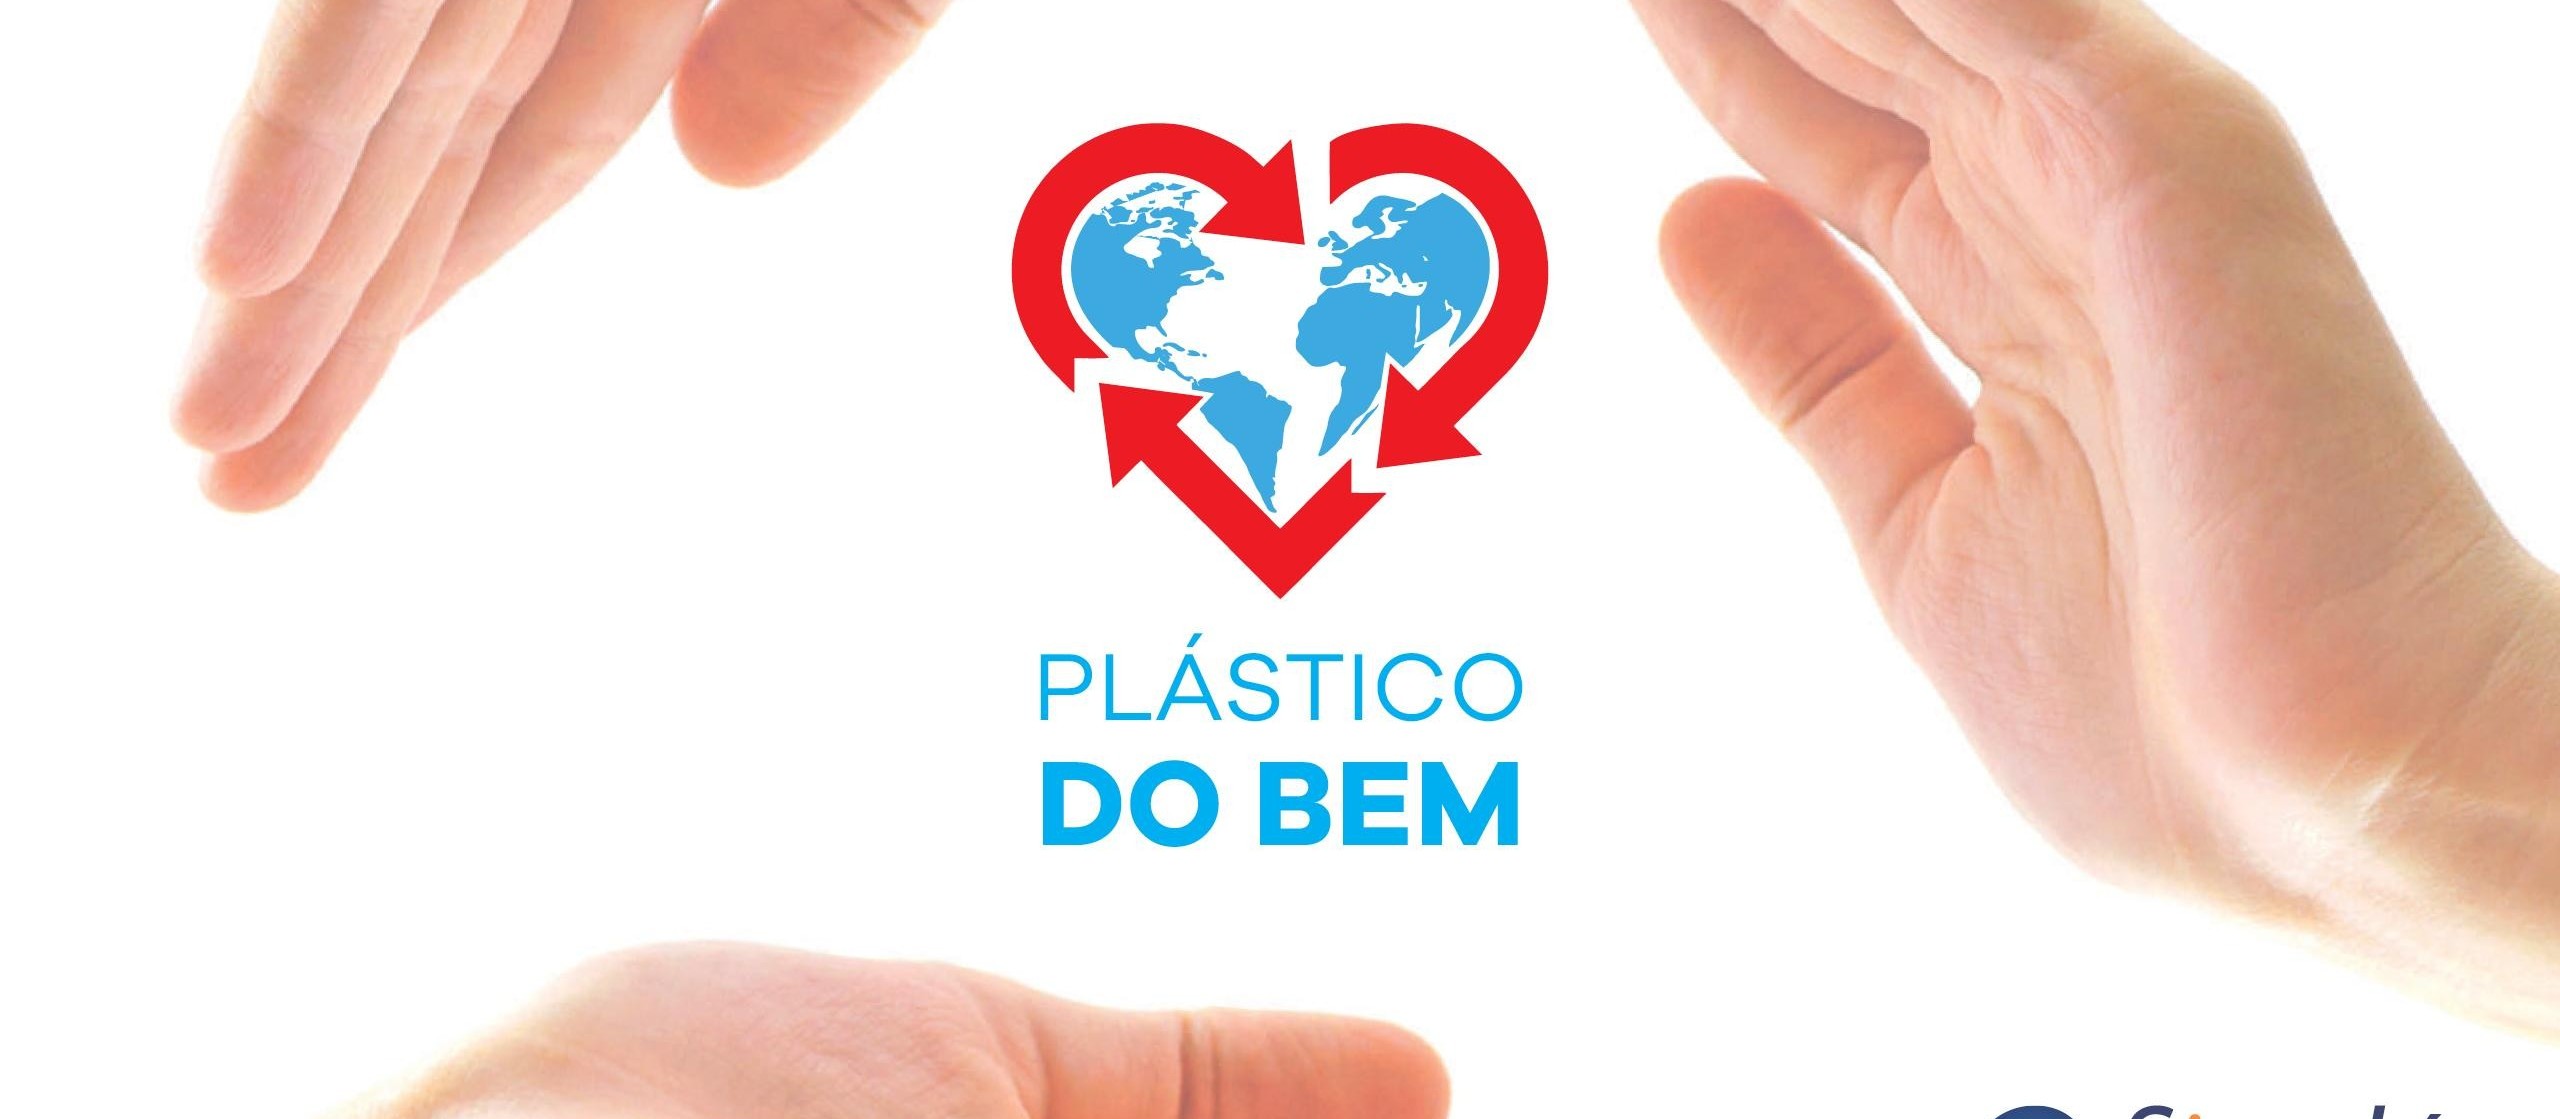 PLÁSTICO DO BEM: foca na educação ambiental e na reciclagem de plástico